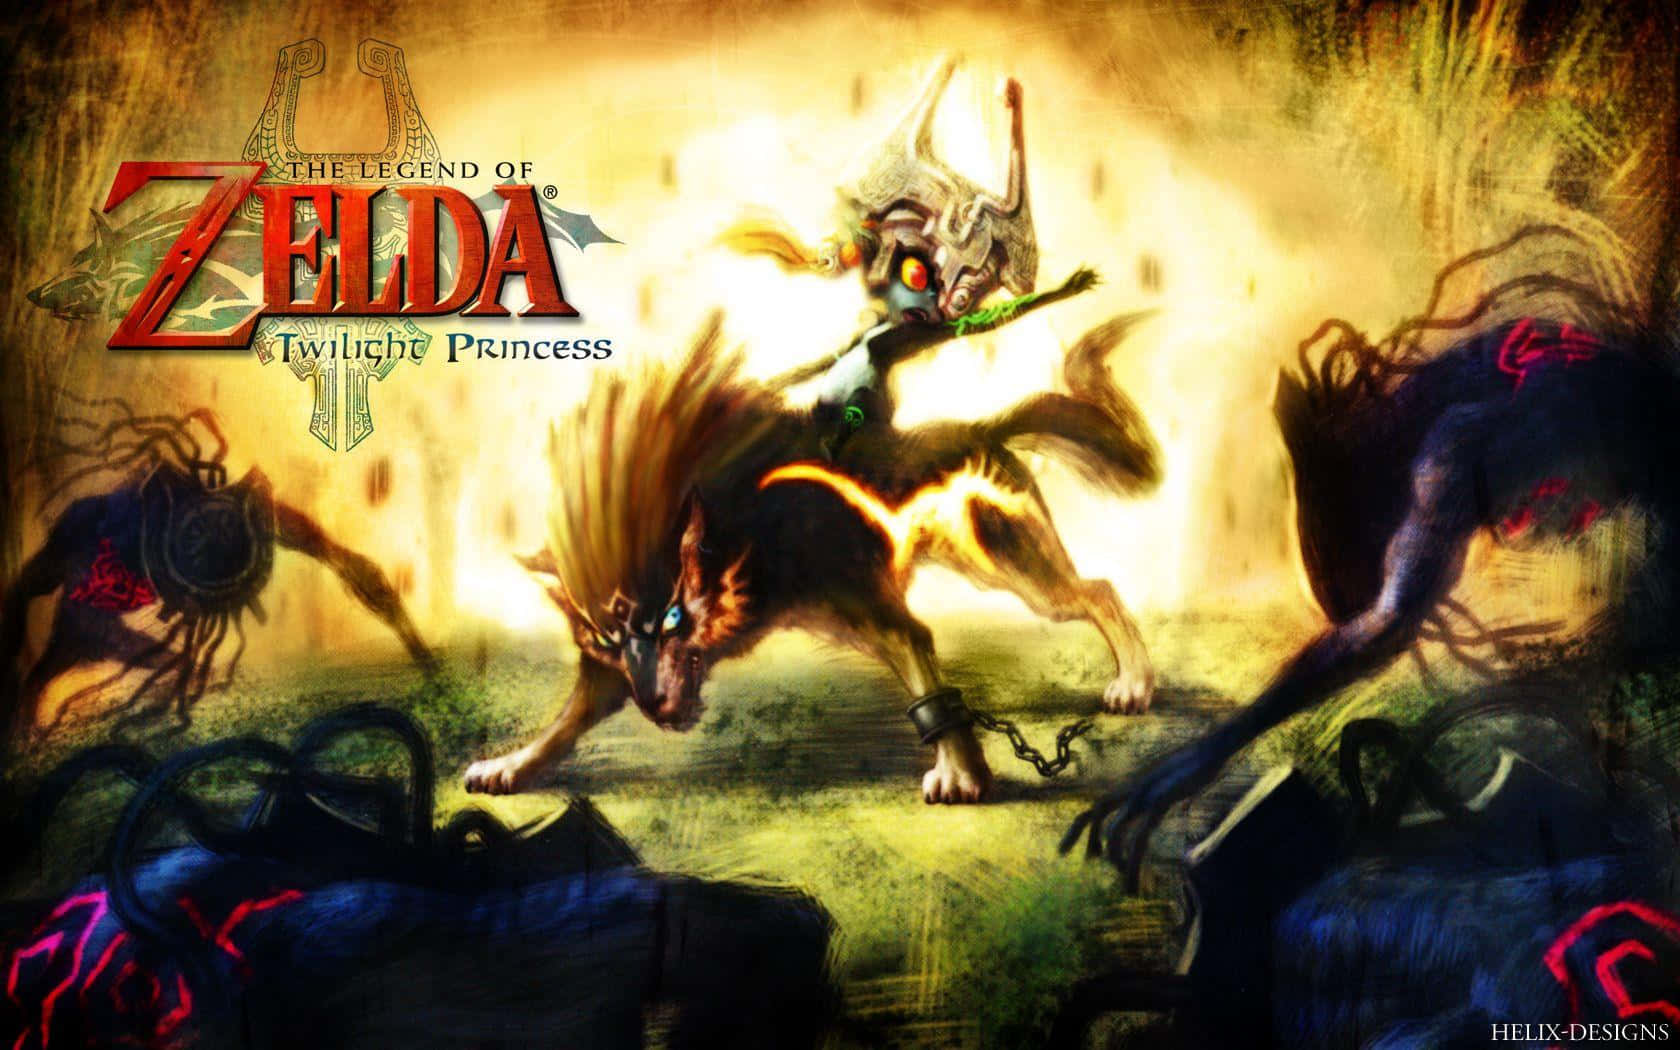 Episkaäventyr Väntar I Legend Of Zelda Twilight Princess. Wallpaper